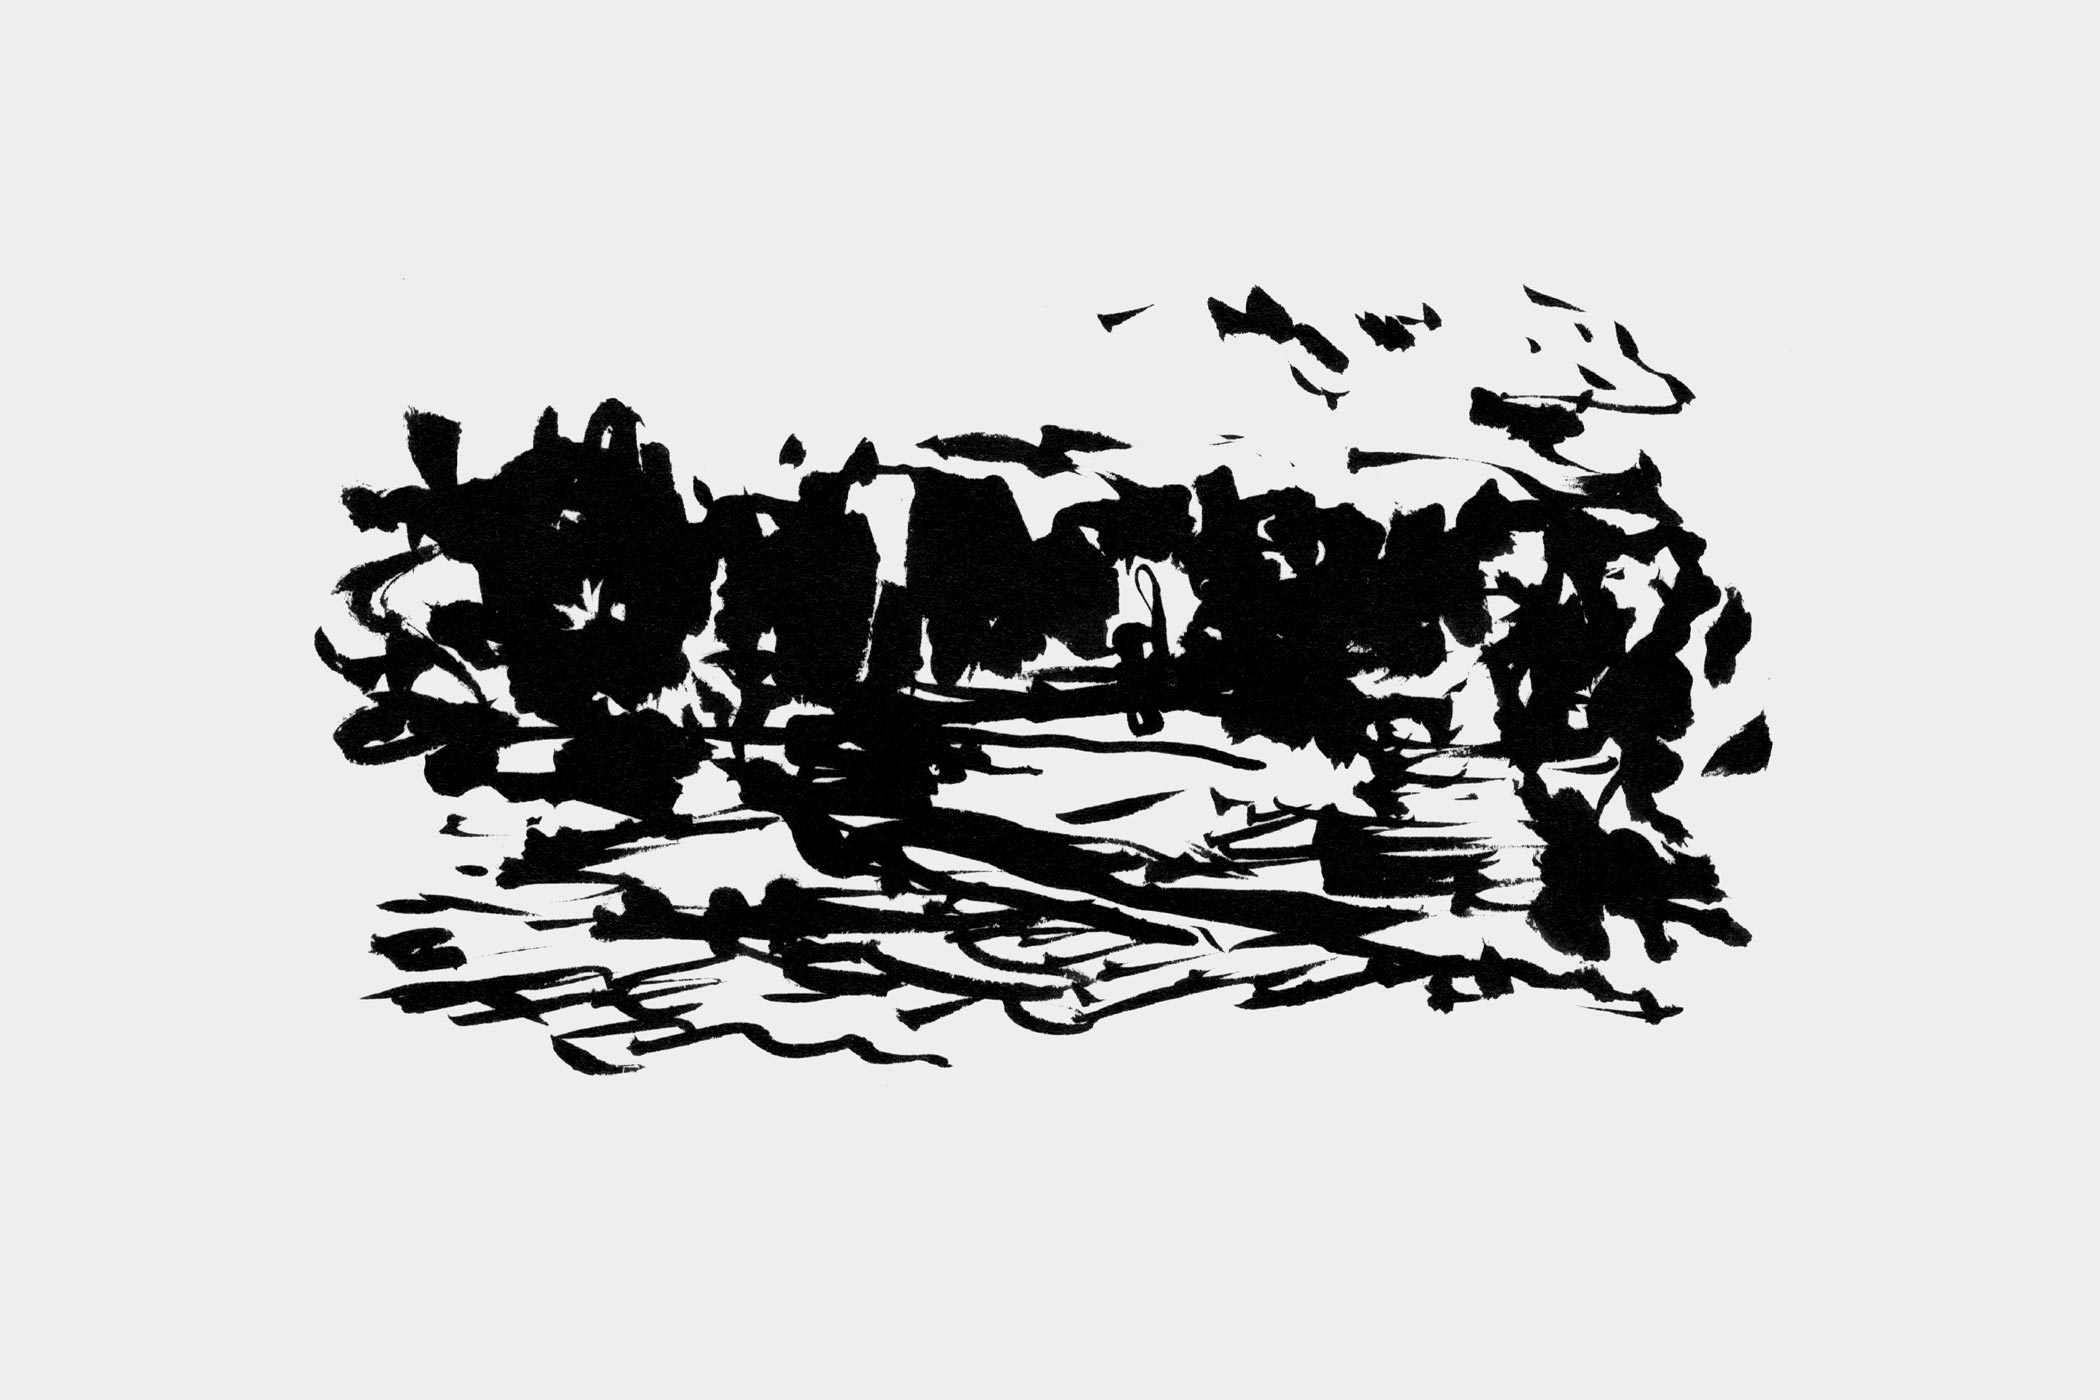 Pinselzeichnung der Donau, gezeichnet von Christian Thanhäuser das Buch „Die Donau hinab“ von Christian Thanhäuser und Karl-Markus Gauß erschienen im Haymon Verlag